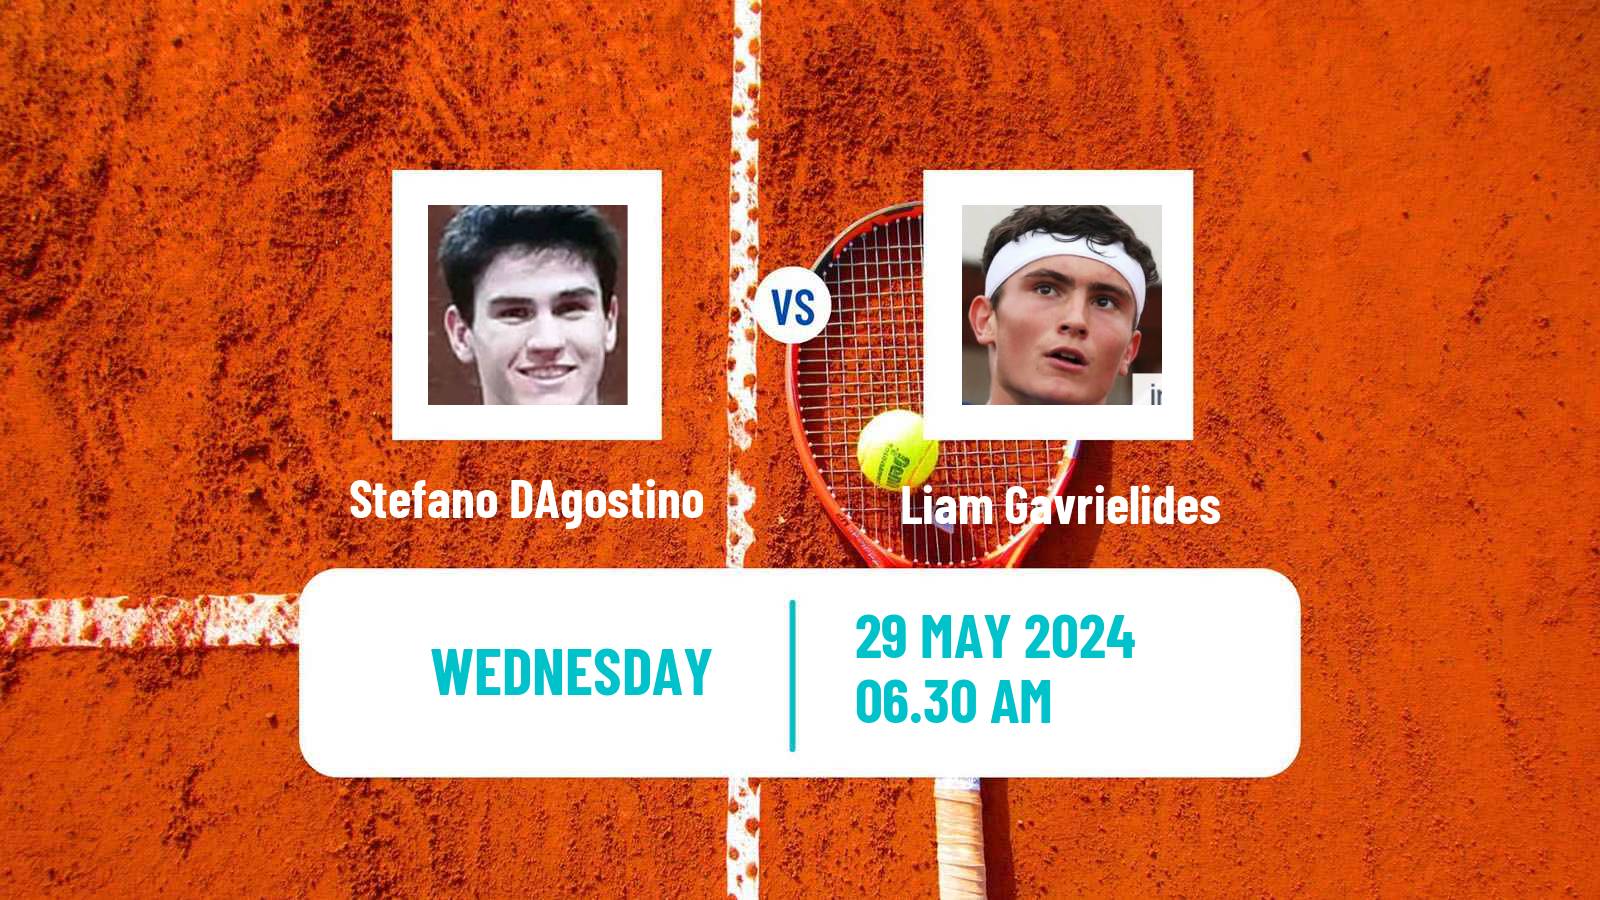 Tennis ITF M15 Vrhnika Men Stefano DAgostino - Liam Gavrielides